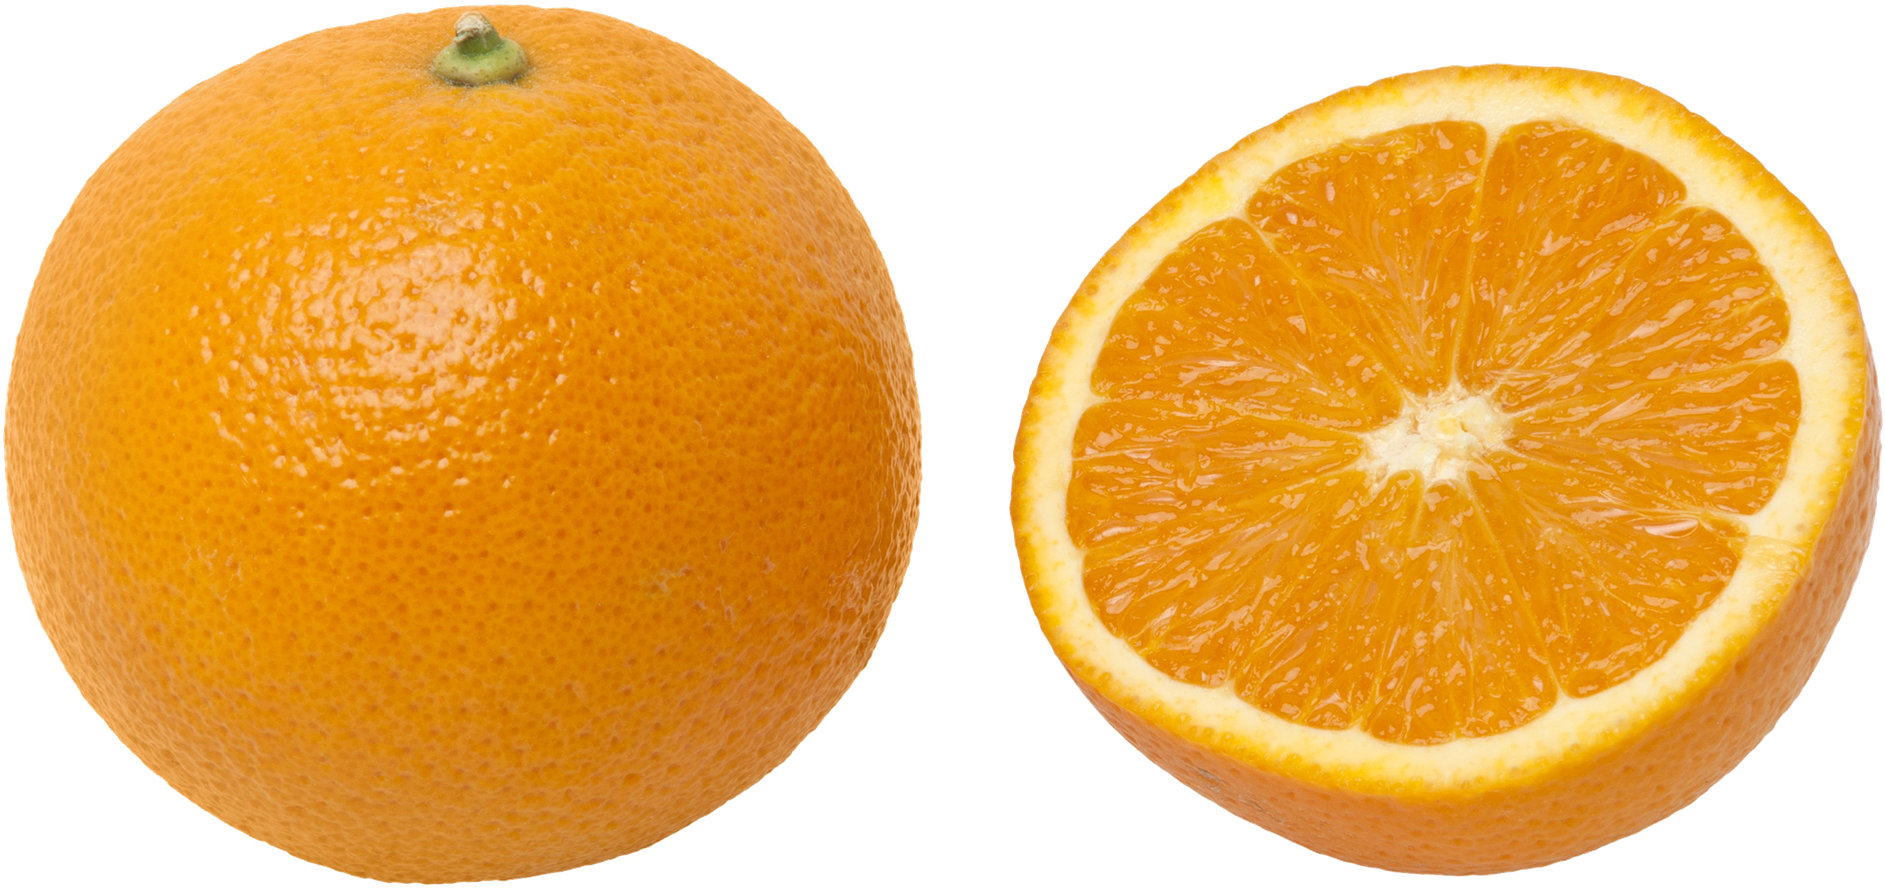 Những quả cam đẹp mắt sẵn sàng ăn liền với vị ngọt ngào và tươi mát khiến bạn muốn xem hình ảnh liền. Là nguồn cung cấp Vitamin C quan trọng, cam giúp cho bạn luôn khỏe mạnh và tràn đầy năng lượng.